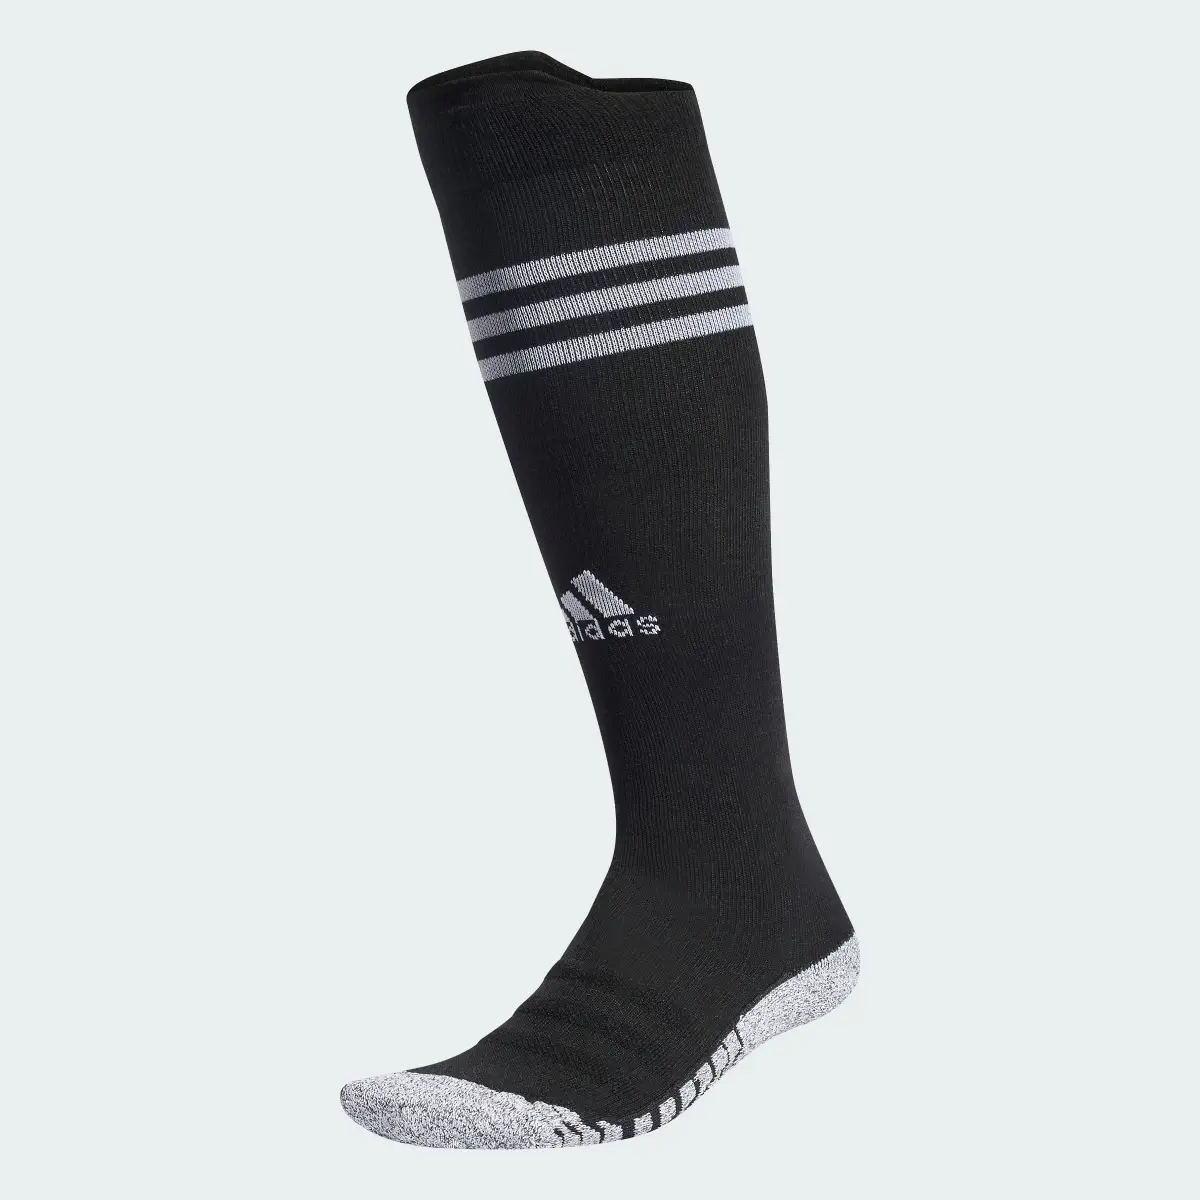 Adidas All Blacks Rugby Knee Socks. 2